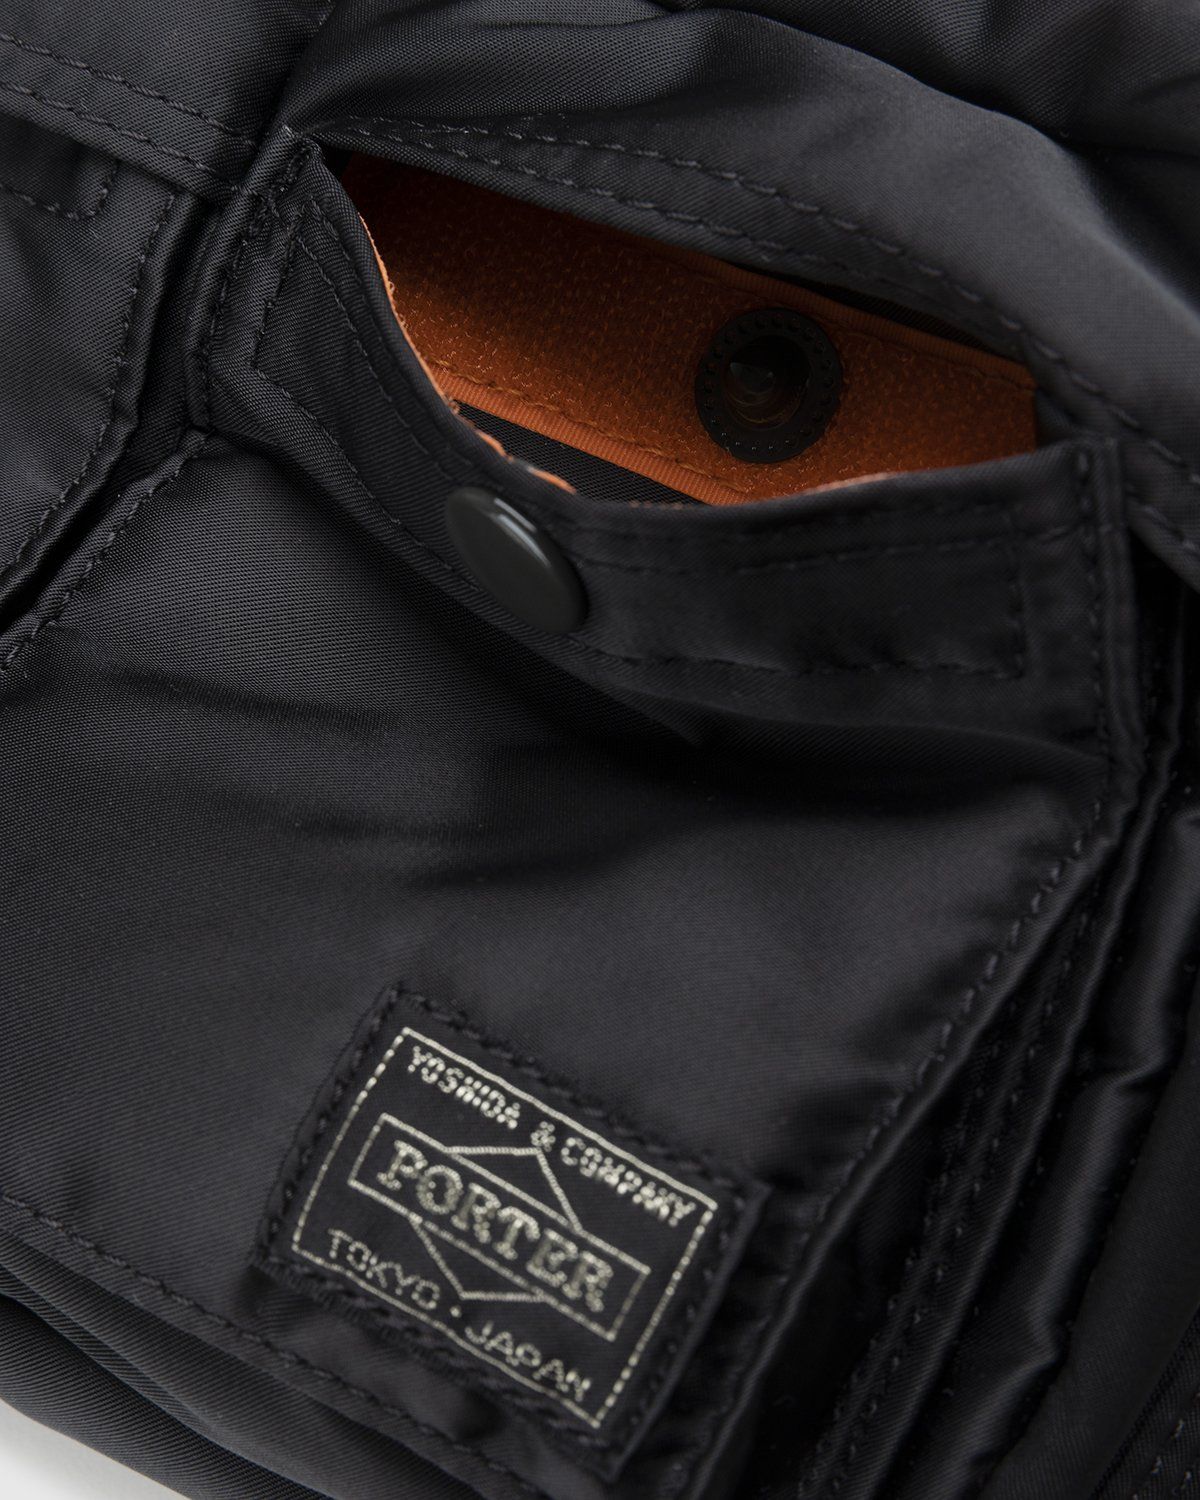 Porter-Yoshida & Co. – Tanker Shoulder Bag Black